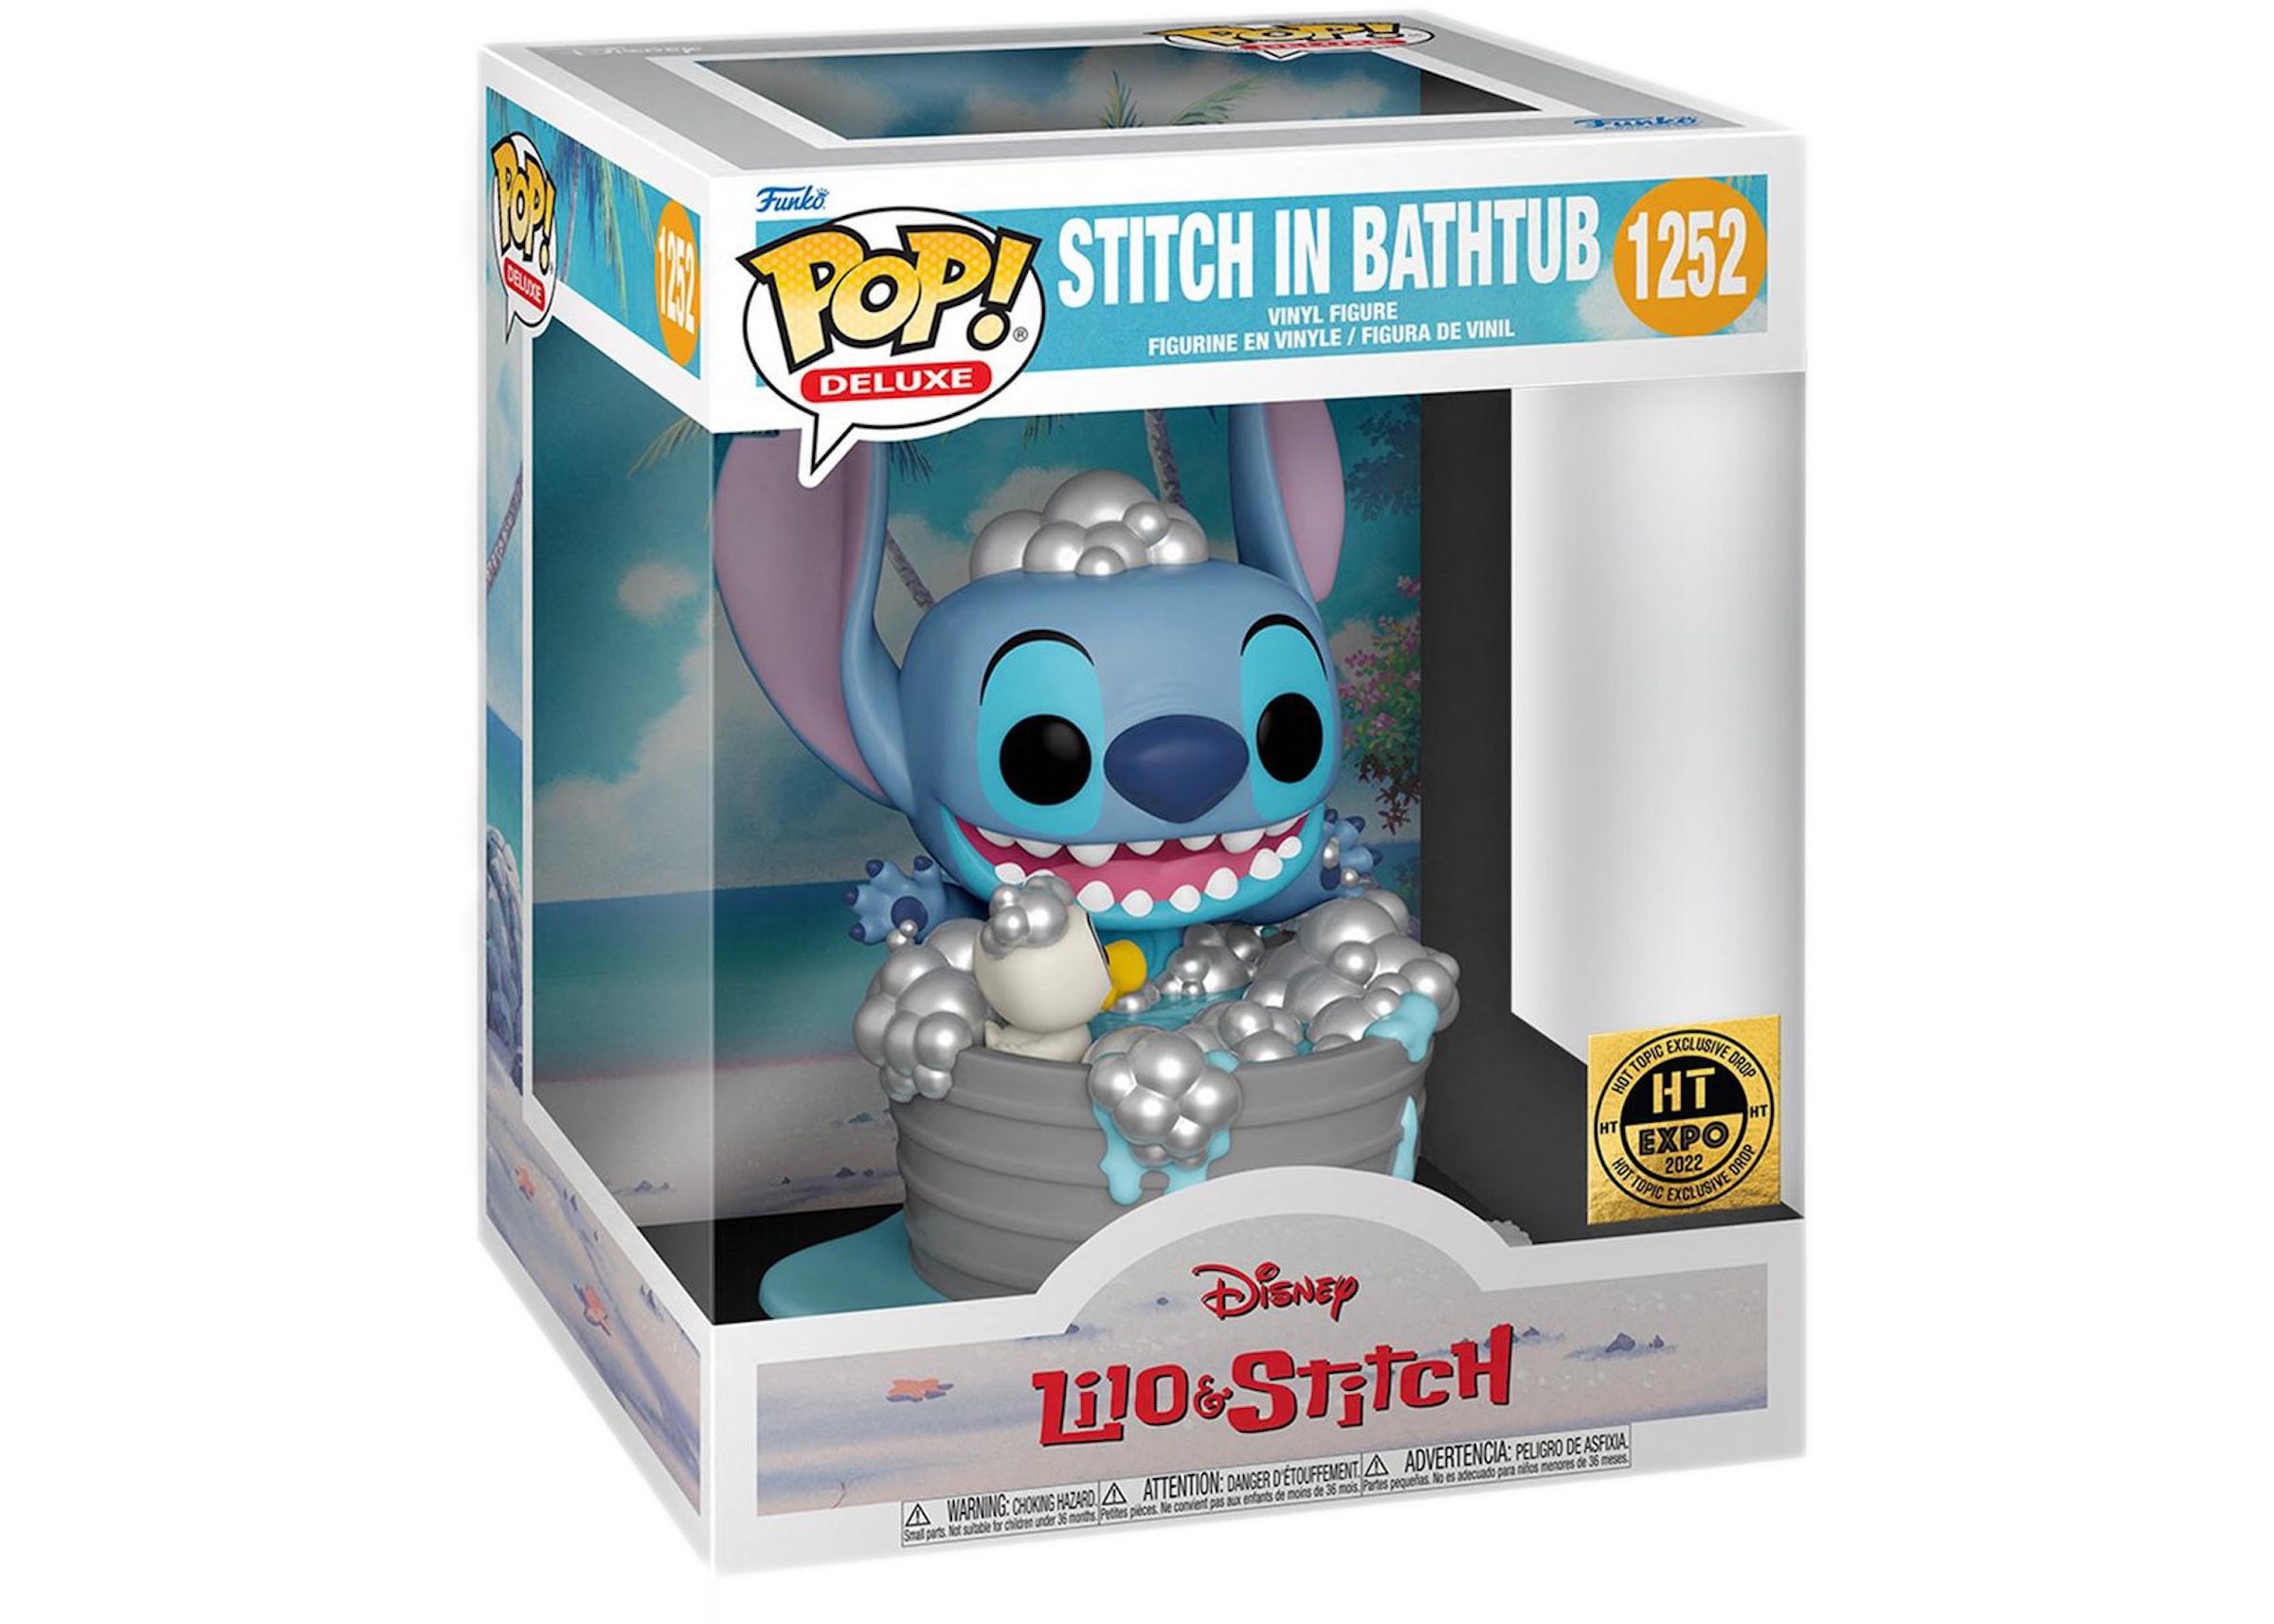 Funko Pop! Deluxe Disney Lilo & Stitch in Bathtub 2022 Hot Topic Expo  Exclusive Figure #1252 - US